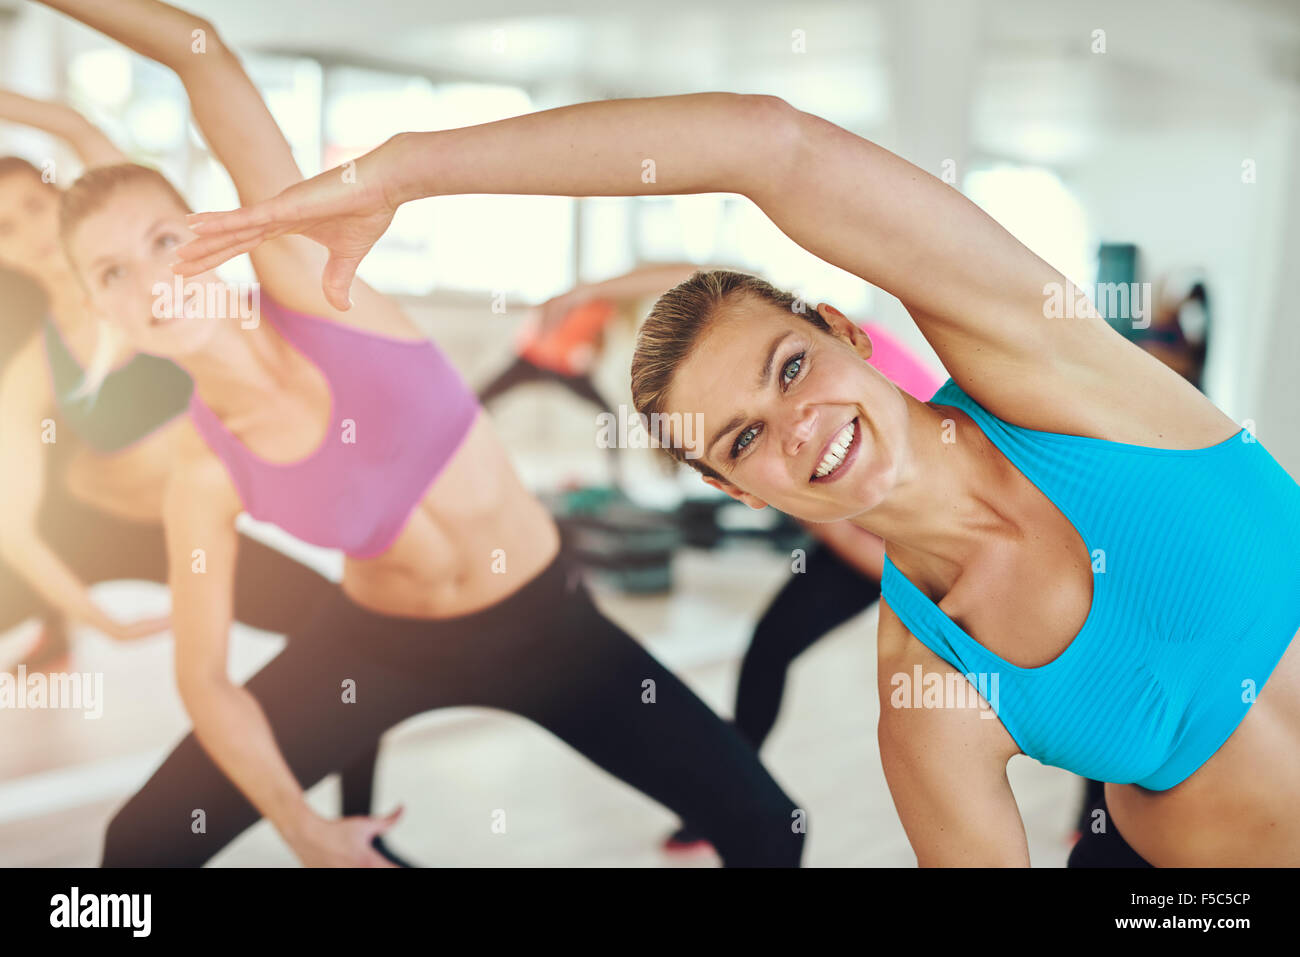 Gimnasio, el deporte, la formación y el concepto de estilo de vida - grupo de mujeres sonrientes estiramiento en el gimnasio Foto de stock